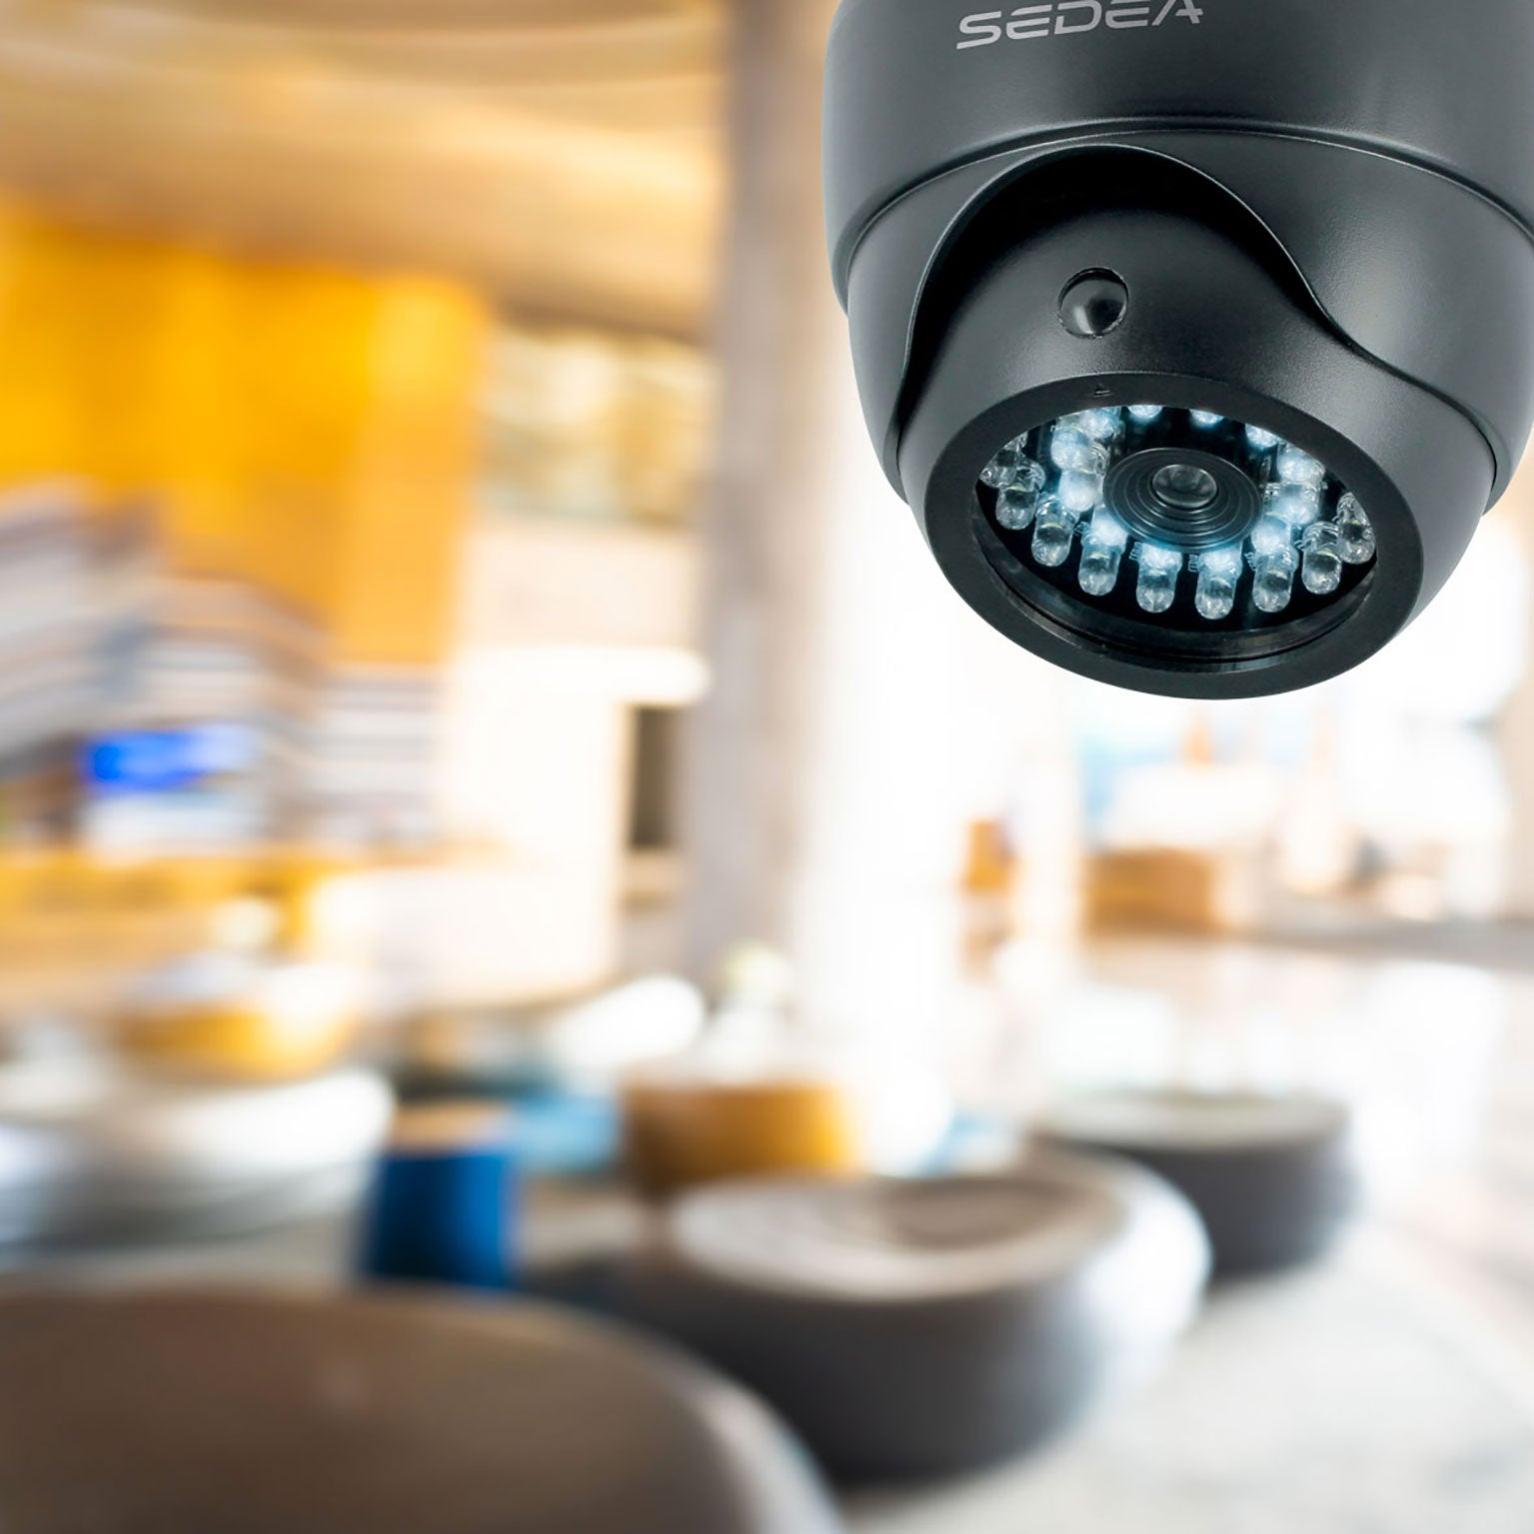 Relaxdays Fausse caméra de surveillance intérieur extérieur caméra factice  lampe LED murale sécurité cambrioleur voleur, grise